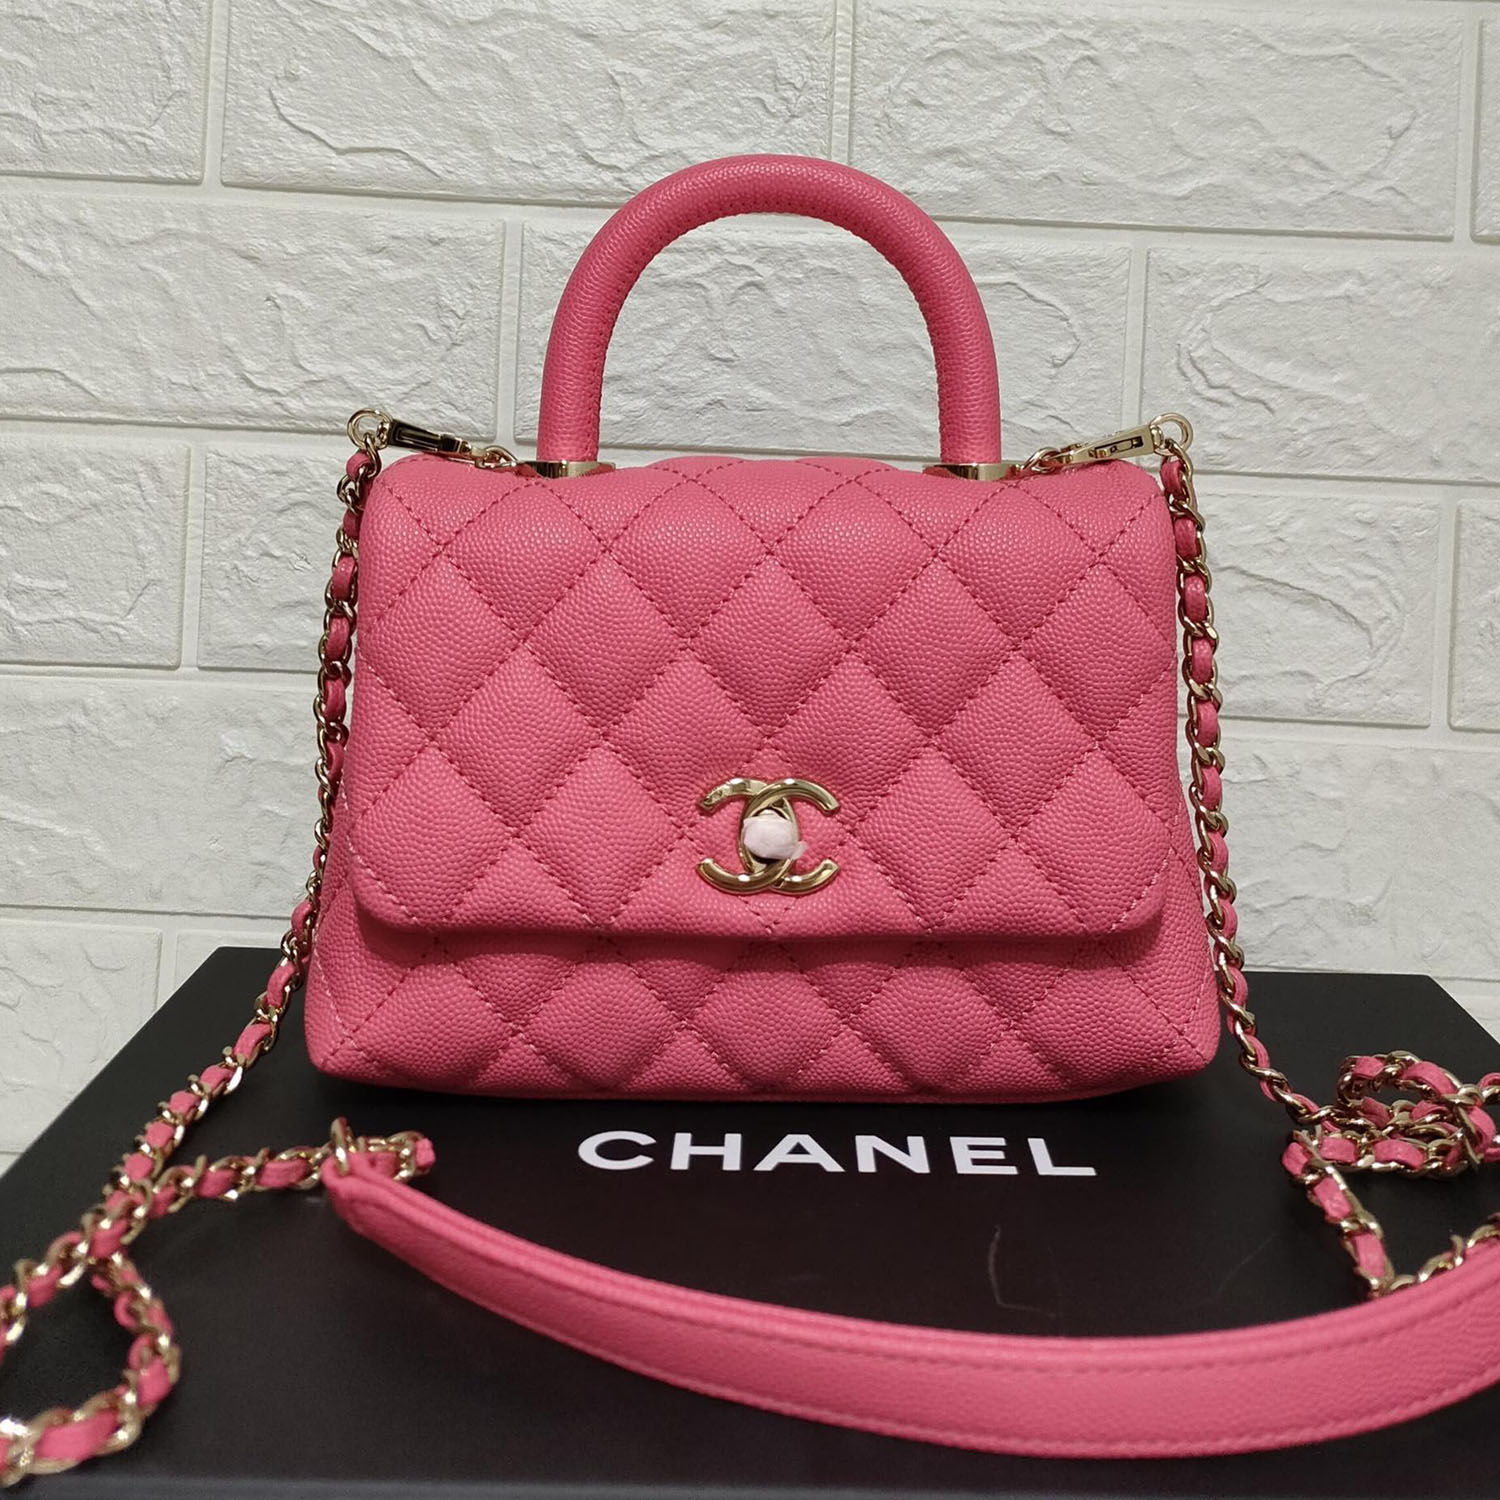 Coco Chanel Số 5 Mademoiselle Nước Hoa  Sơn màu hồng nước hoa Chanel png  tải về  Miễn phí trong suốt Màu Hồng png Tải về